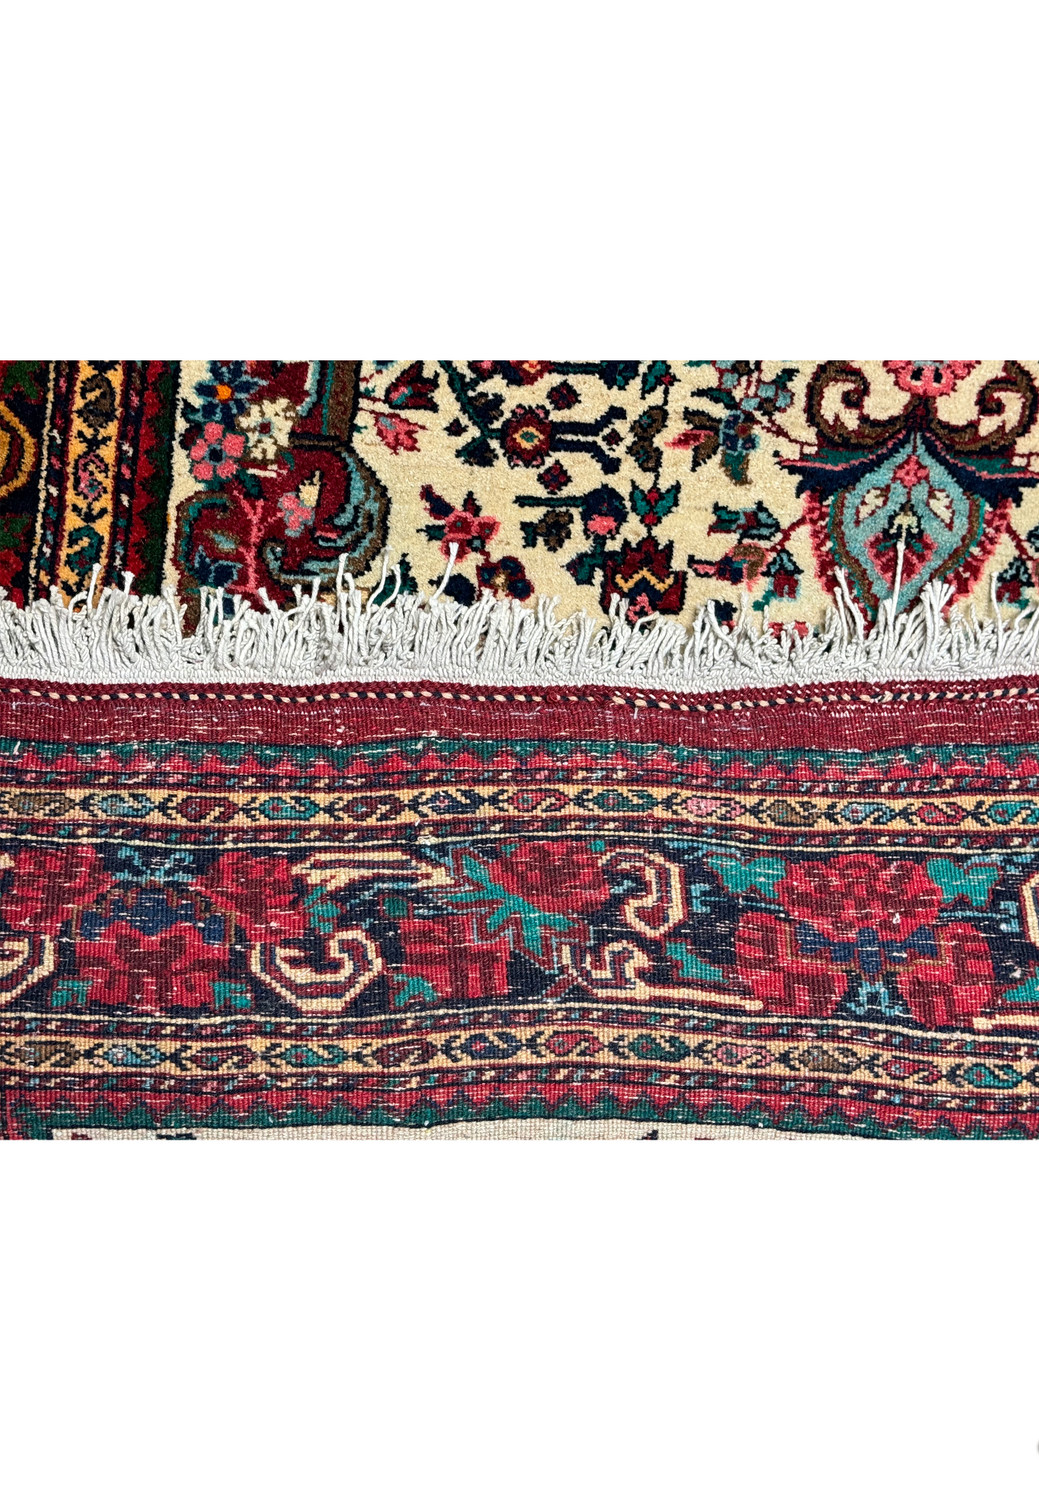 Side detail showing the dense weave and fringe of a vintage Persian Bijar rug."